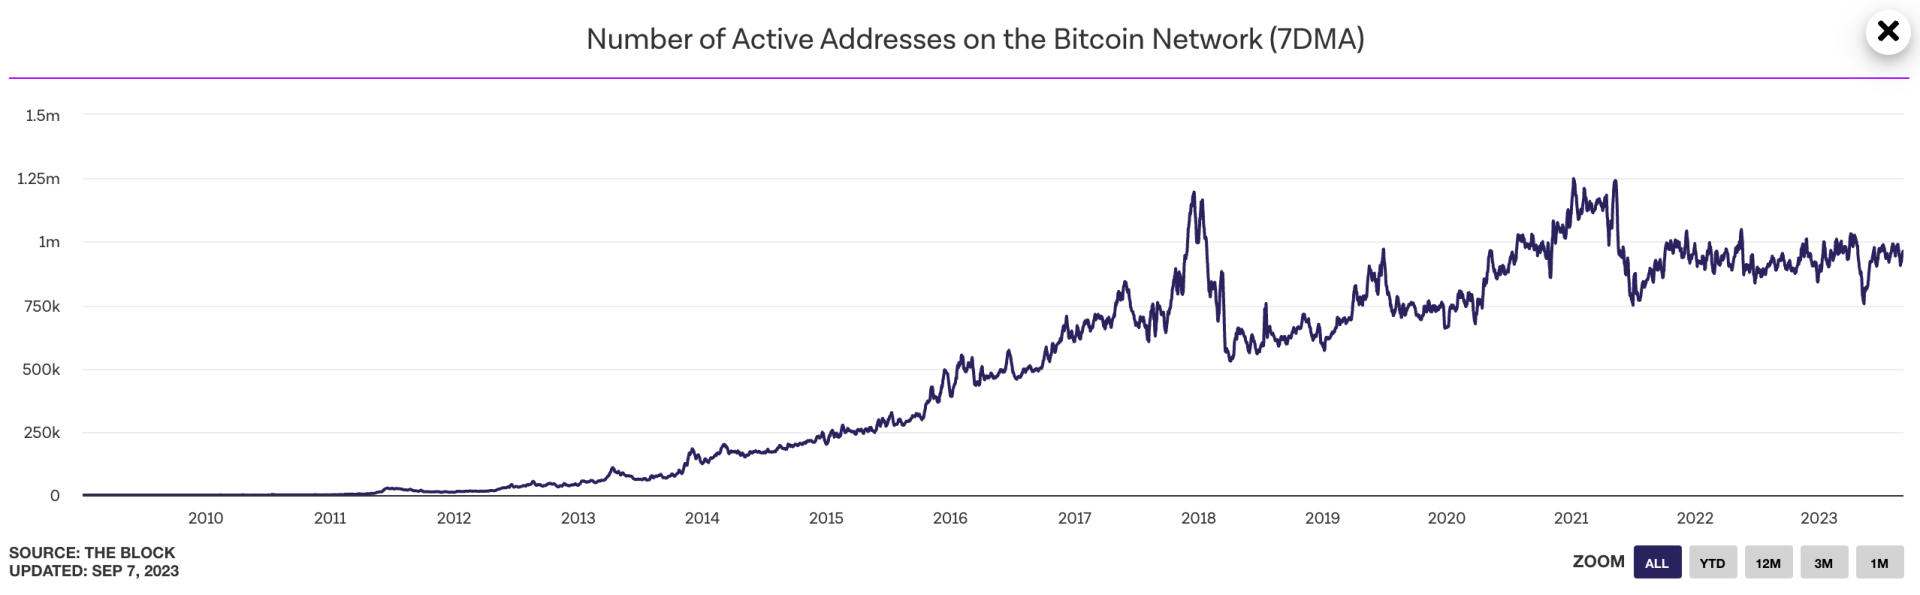 Le nombre d'adresses actives sur le réseau Bitcoin stagne depuis le début de l'année - 8 septembre 2023. 